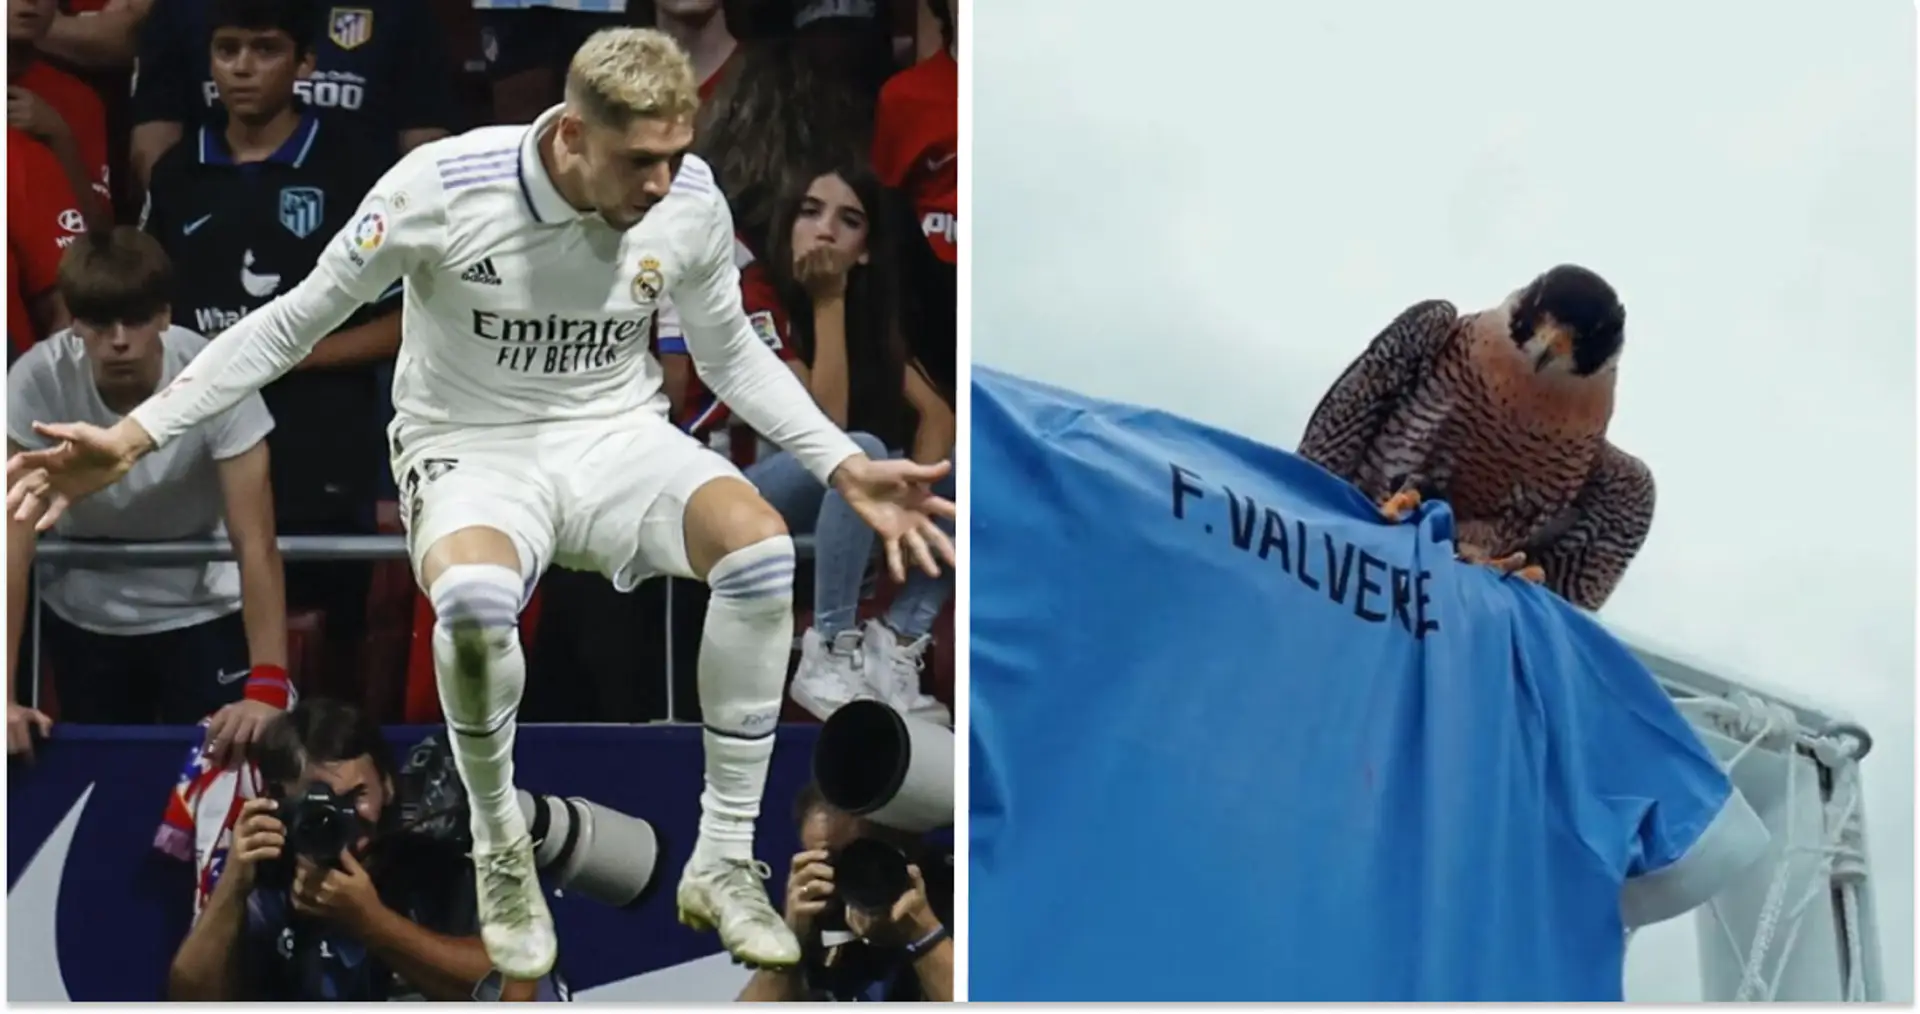 "So enthüllt man einen WM-Kader": Uruguays Video mit Kader-Bekanntgabe geht viral - die Episode mit Valverde wird euch gefallen!